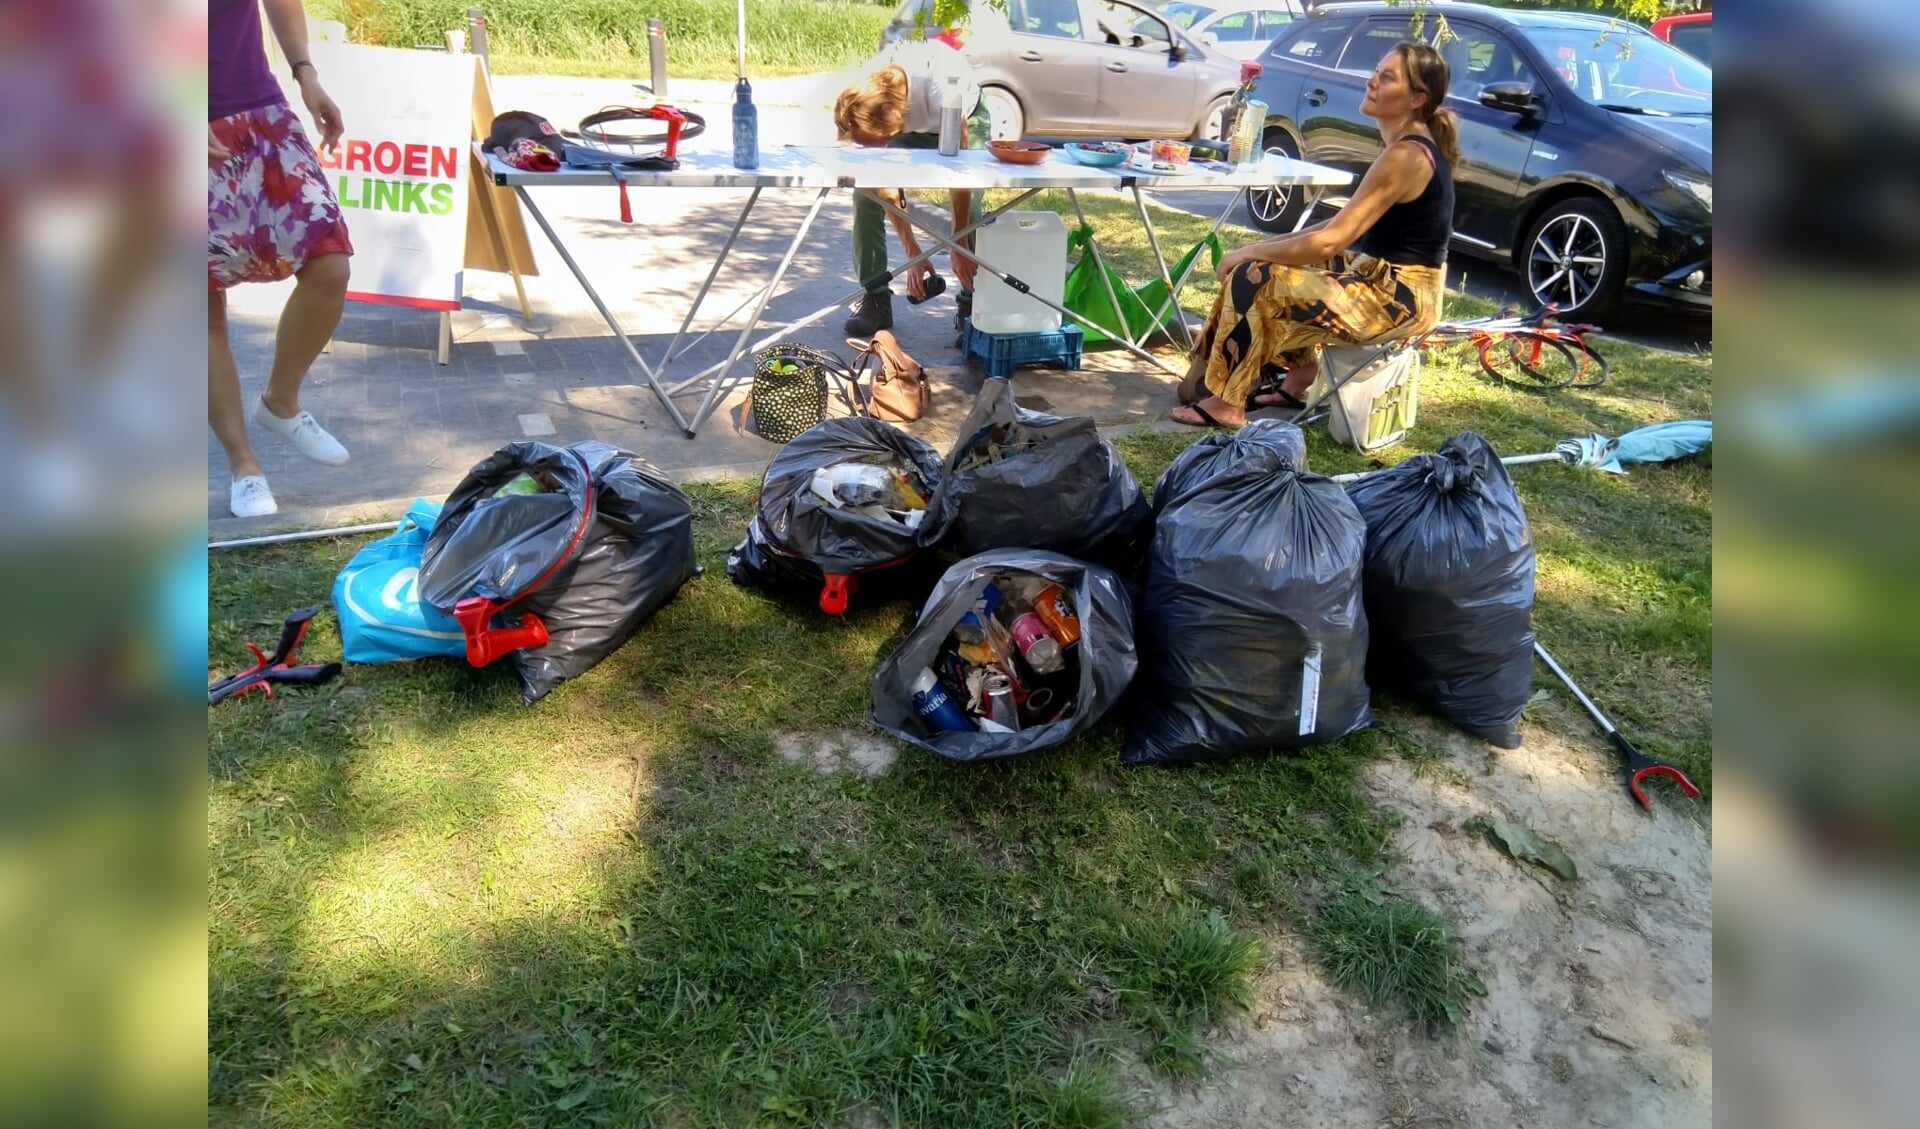 Volle vuilniszakken met zwerfafval tijdens de actie.